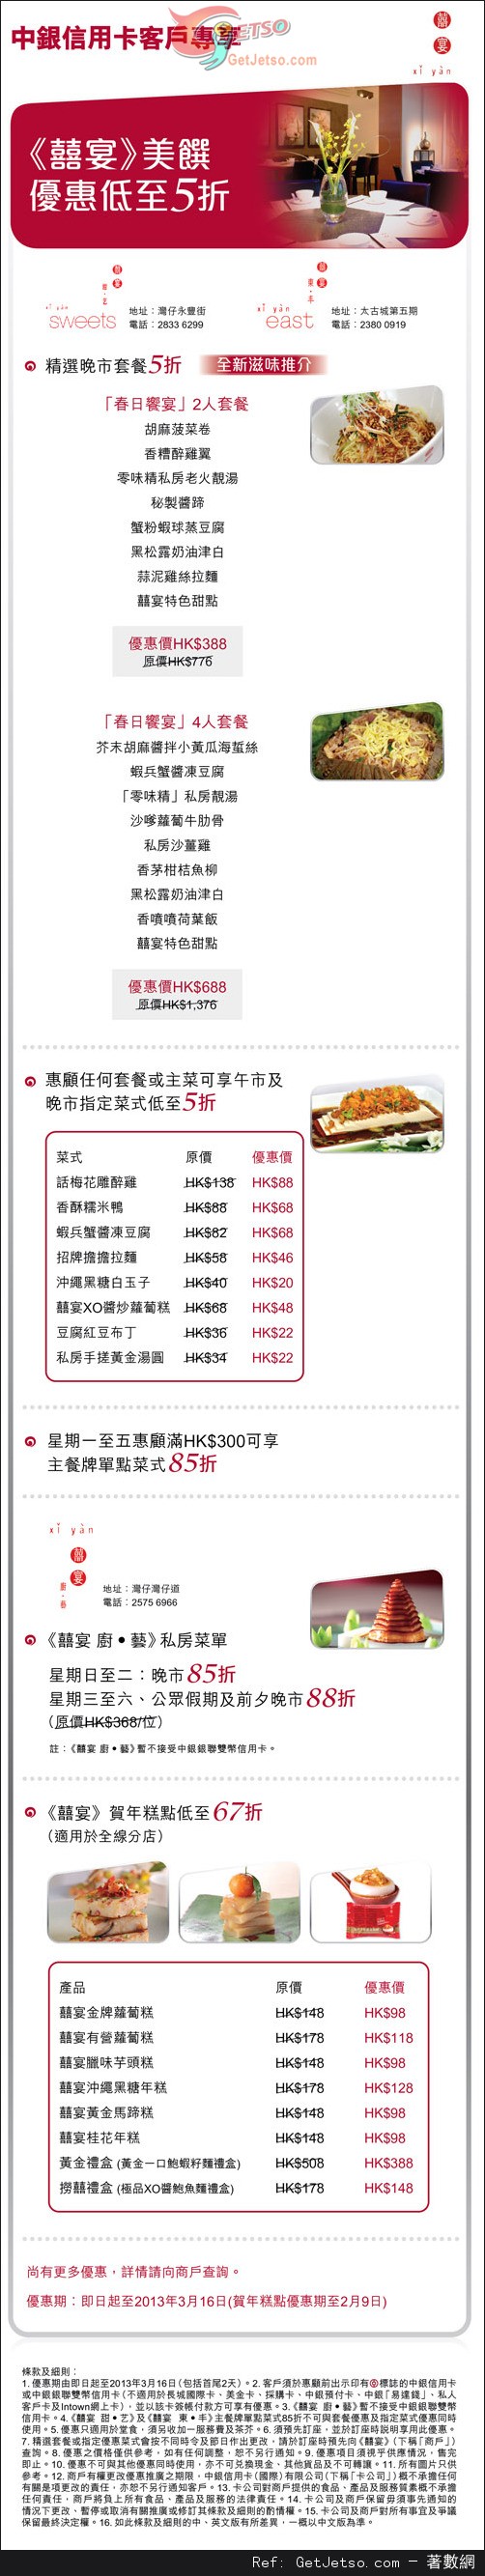 中銀信用卡享「囍宴」美饌低至半價優惠(至13年3月16日)圖片1